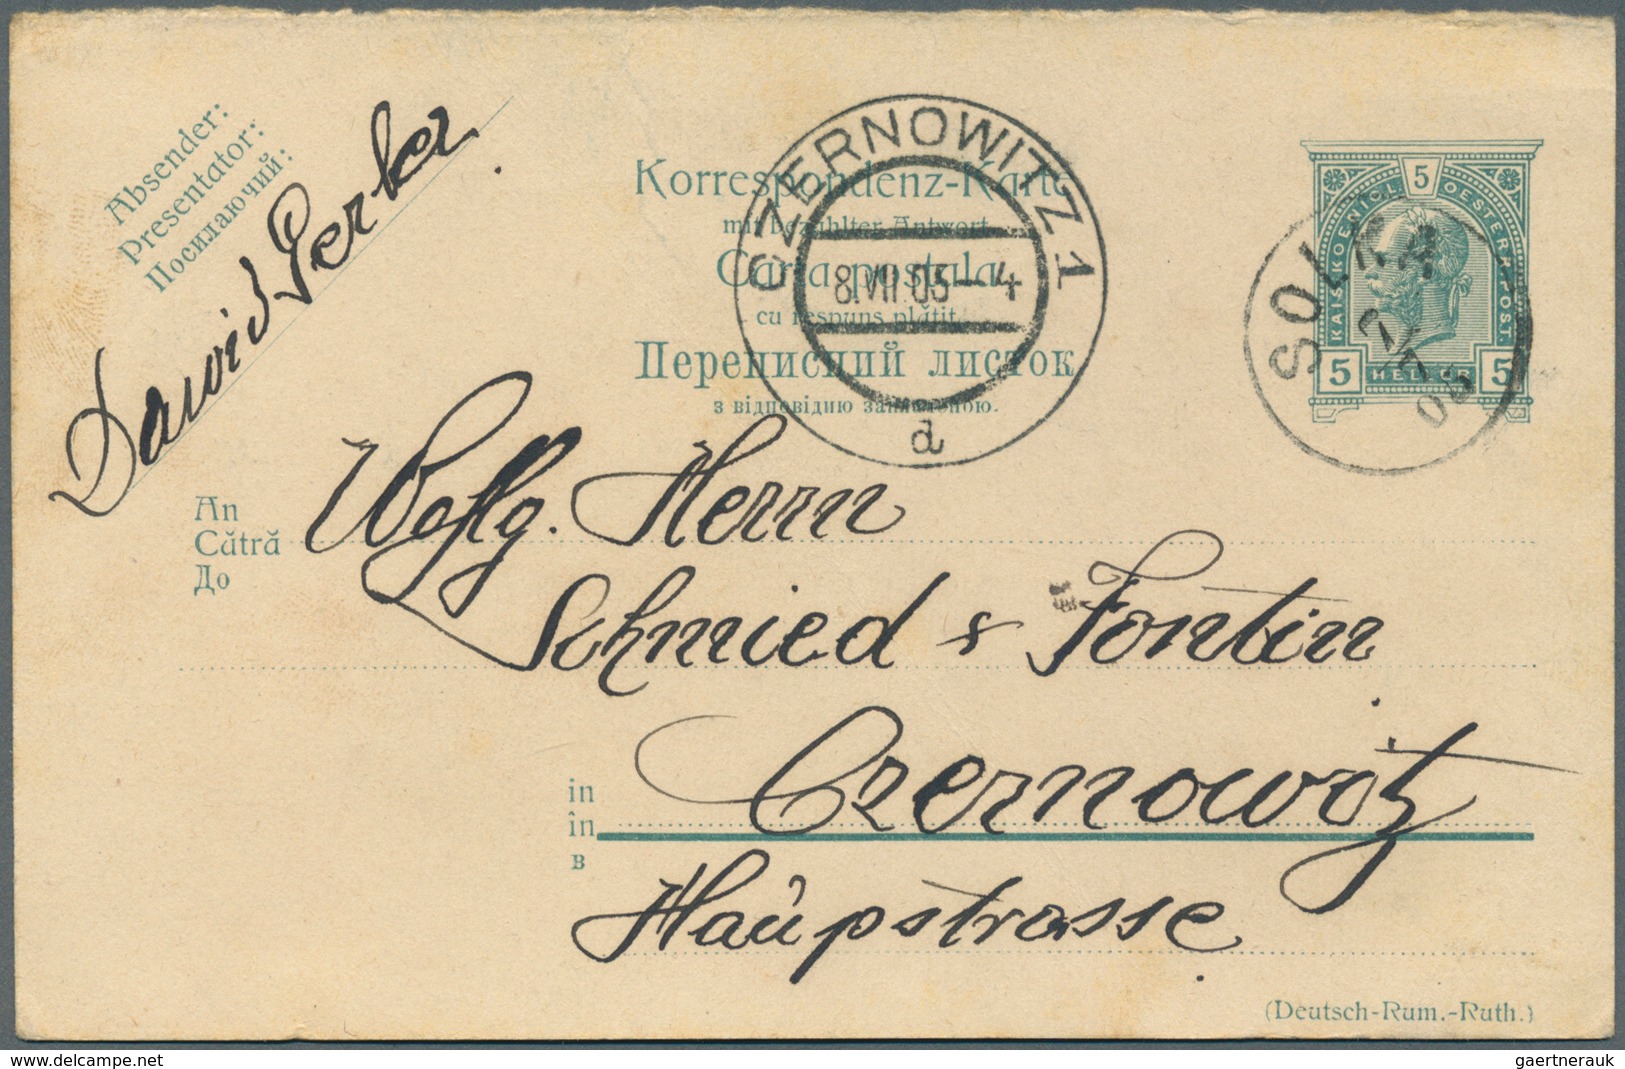 Österreich - Ganzsachen: 1900/1919, reichhaltige Sammlung mit ca.450 Ganzsachen-Postkarten der "Hell